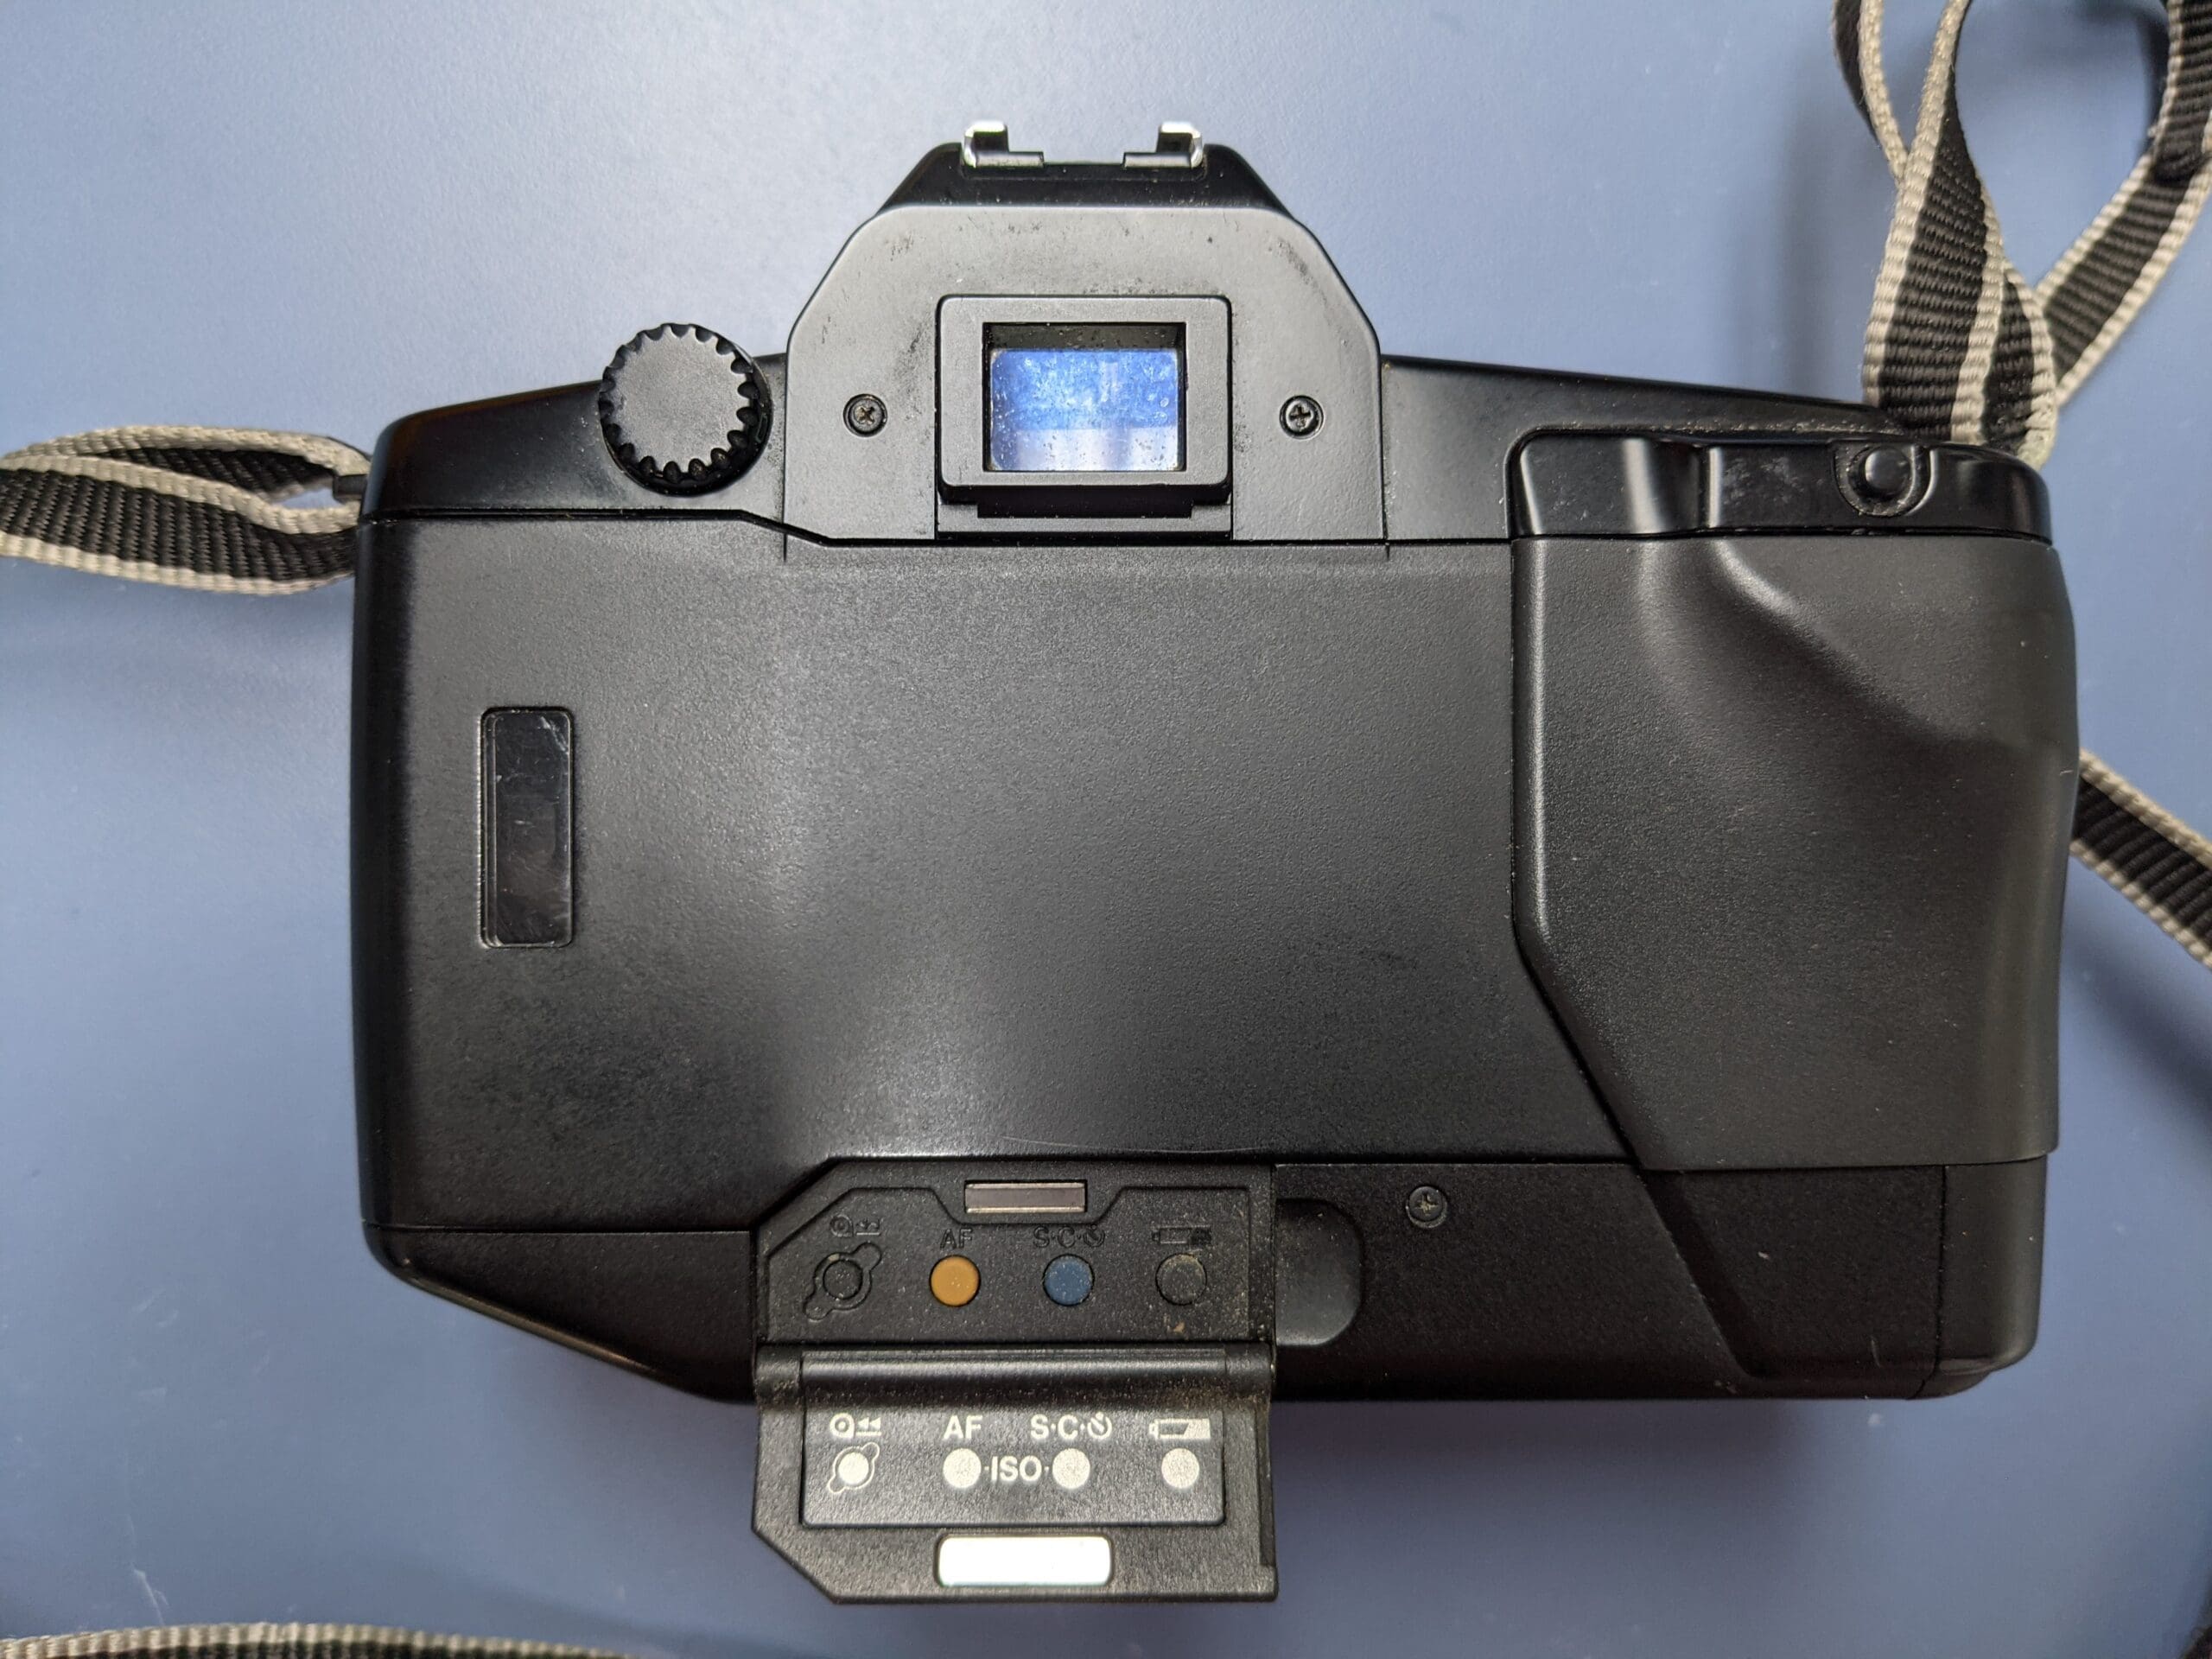 Canon EOS 650 35mm Film SLR (Camera Body)